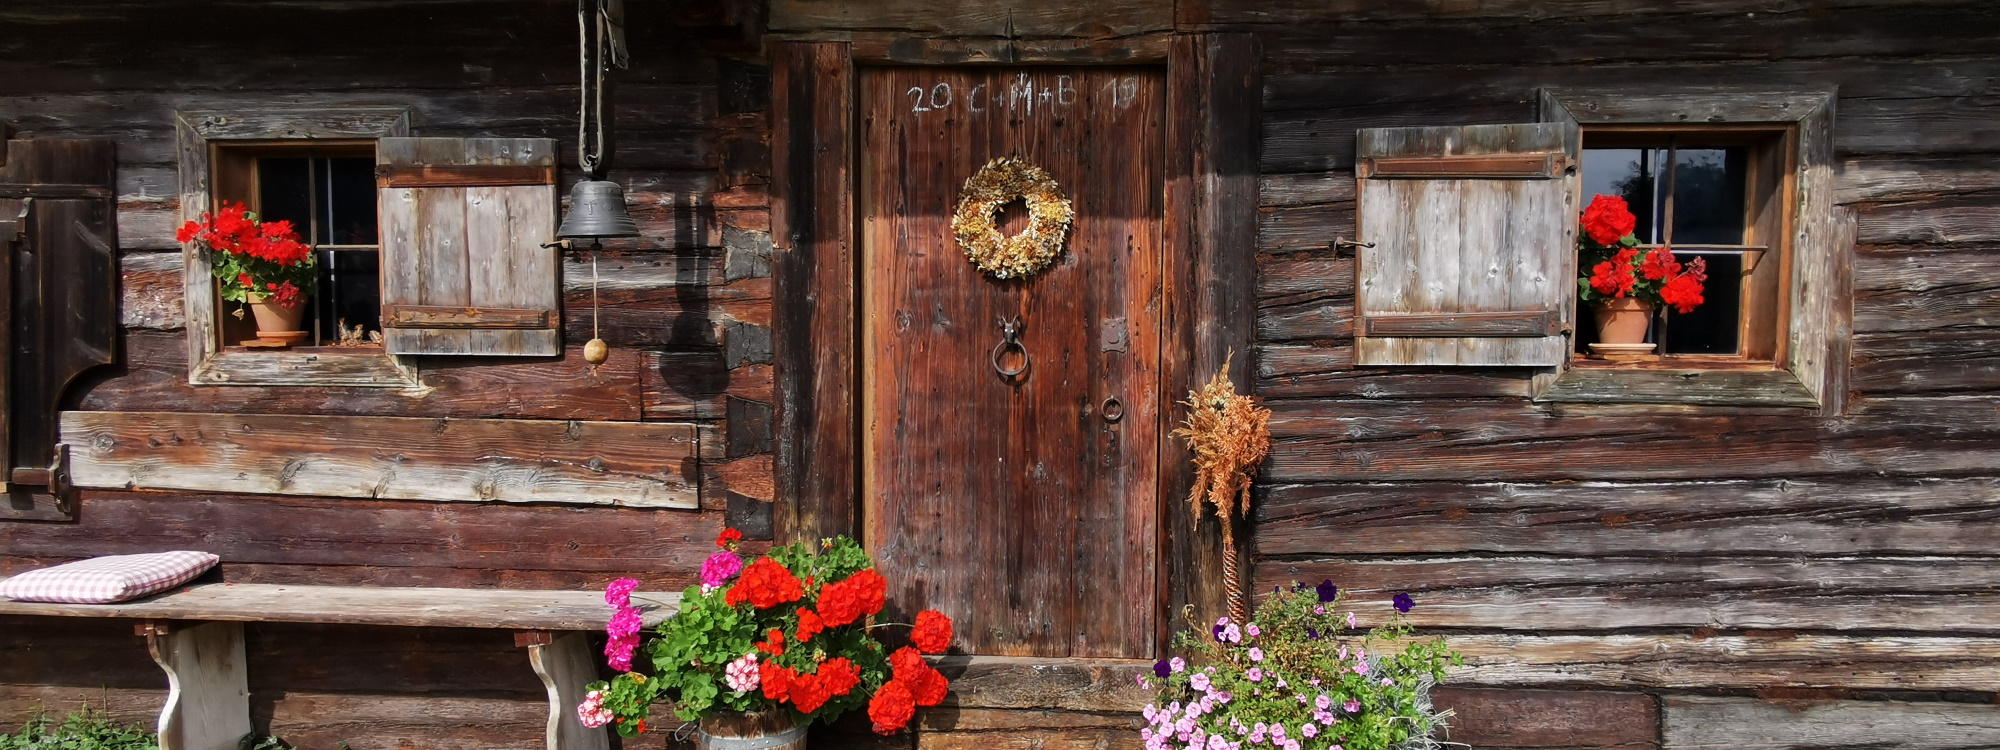 Hausfront der Bauernhofwanderung komplett in verwittertem Holzblock mit Hausbank